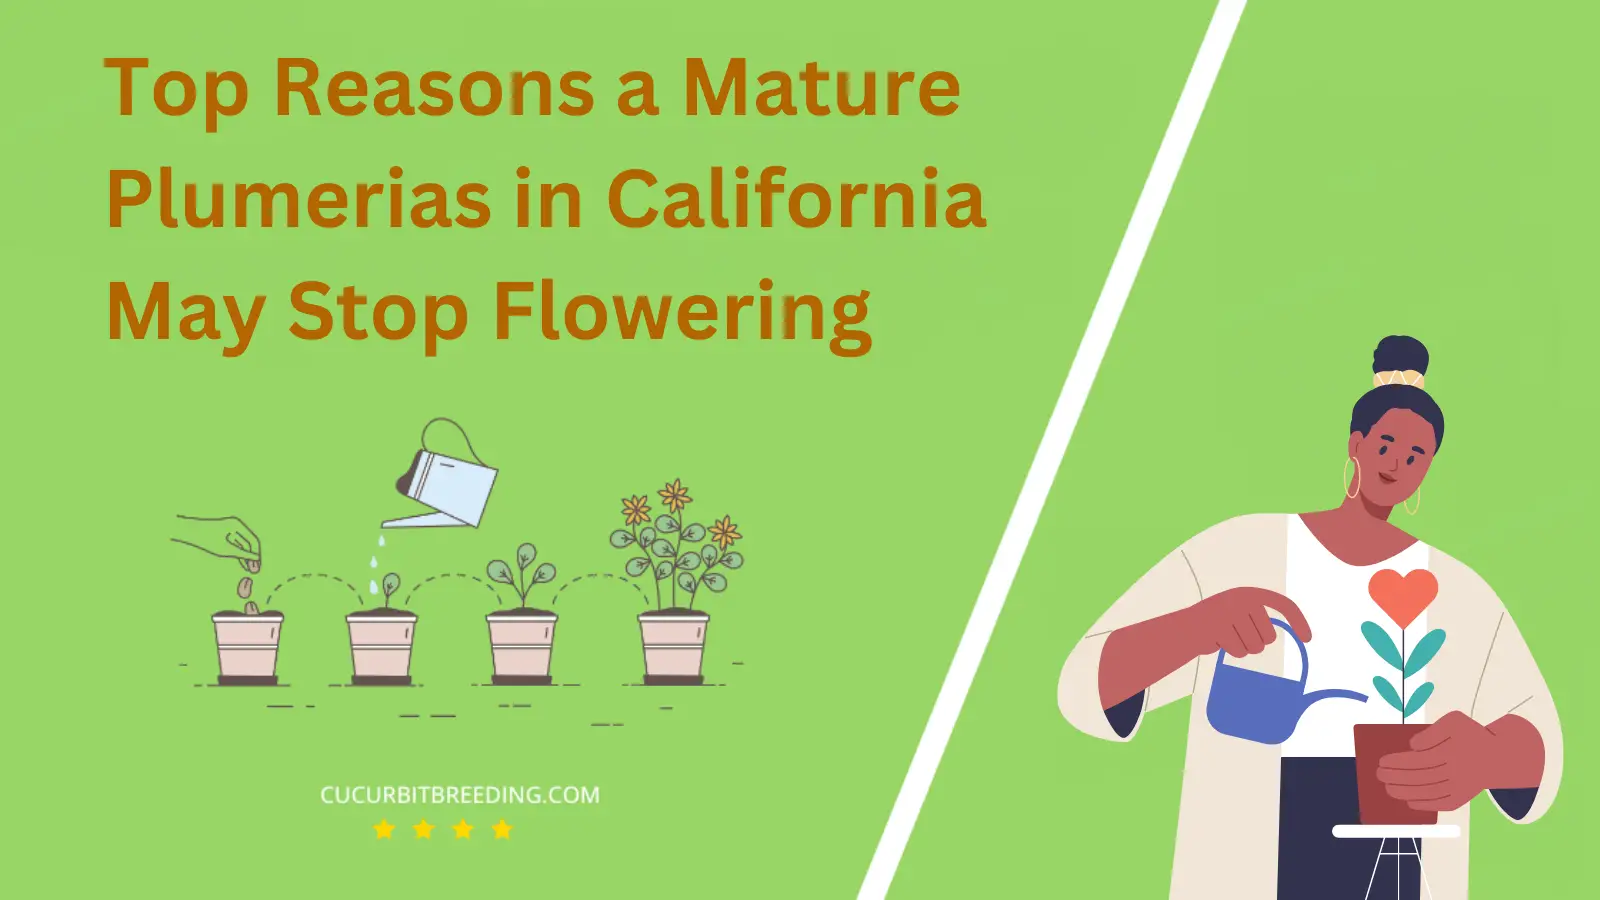 Top Reasons a Mature Plumerias in California May Stop Flowering